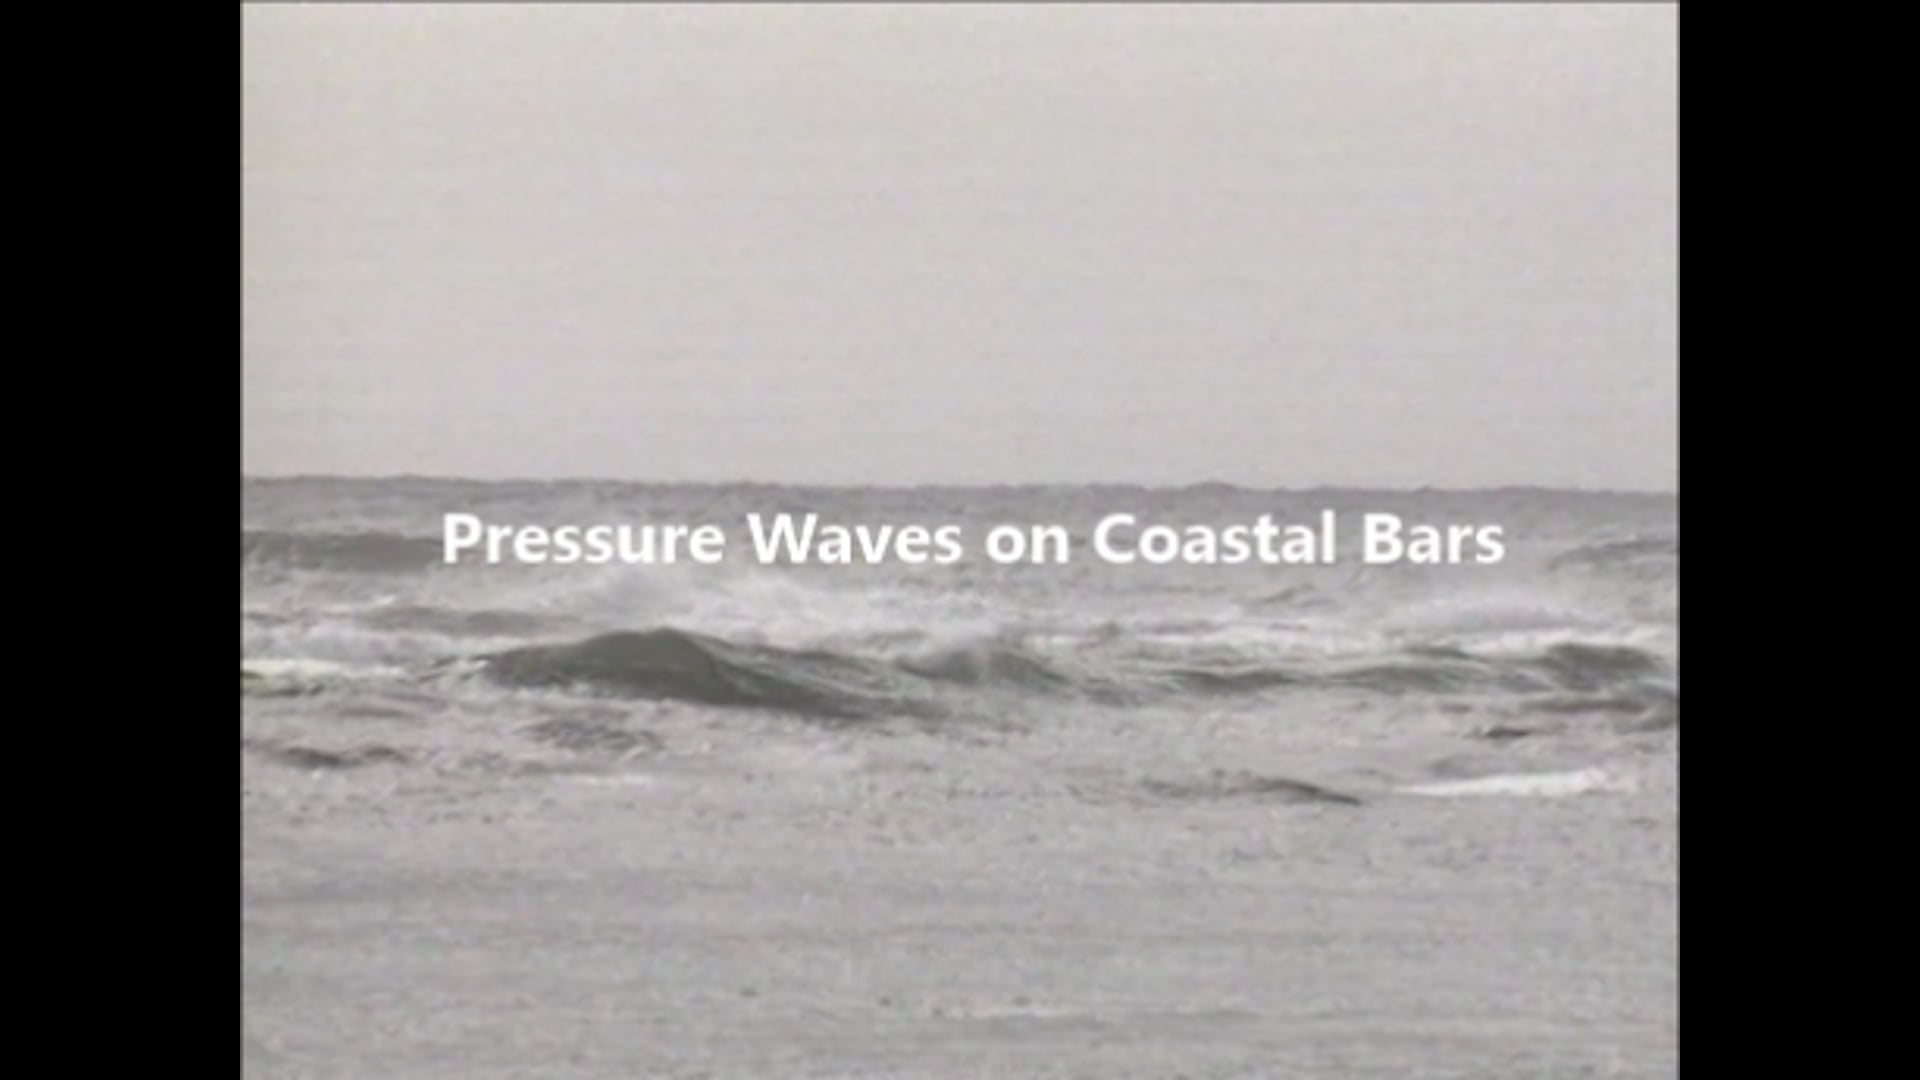 Pressure waves on coastal bars